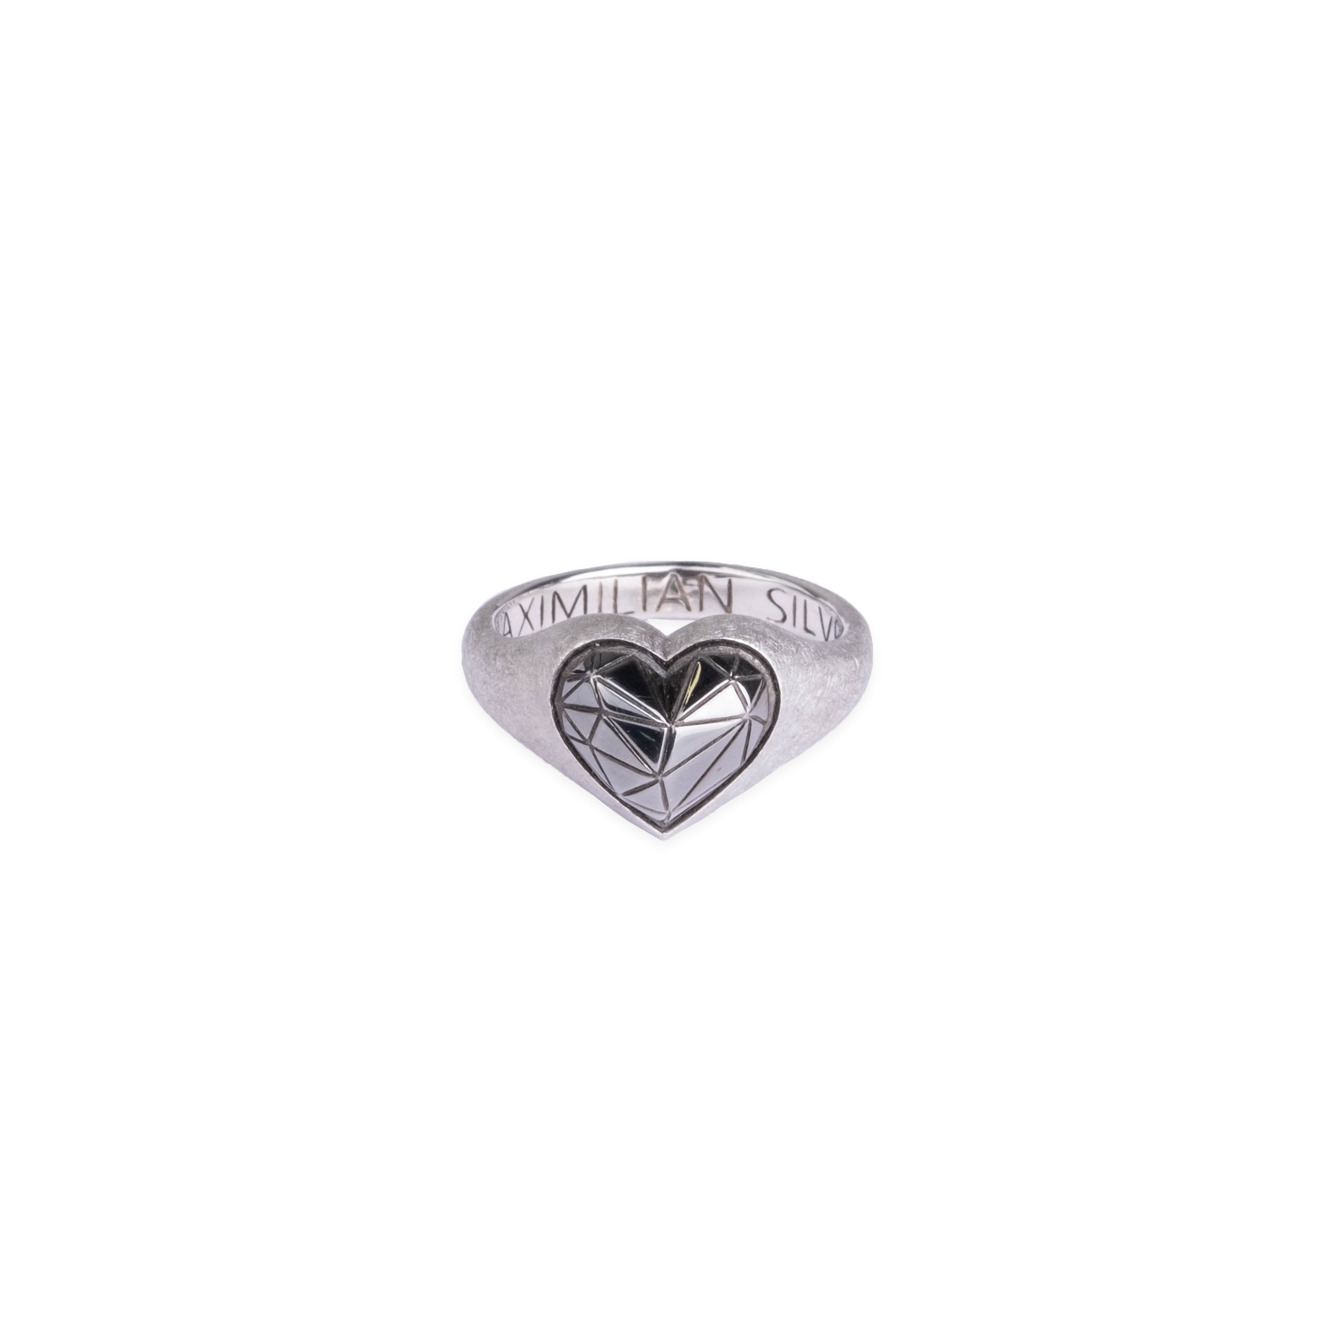 Maximilian Silver Label Матовое кольцо из серебра maximilian silver label малые серьги из серебра авокадо с черным жемчугом